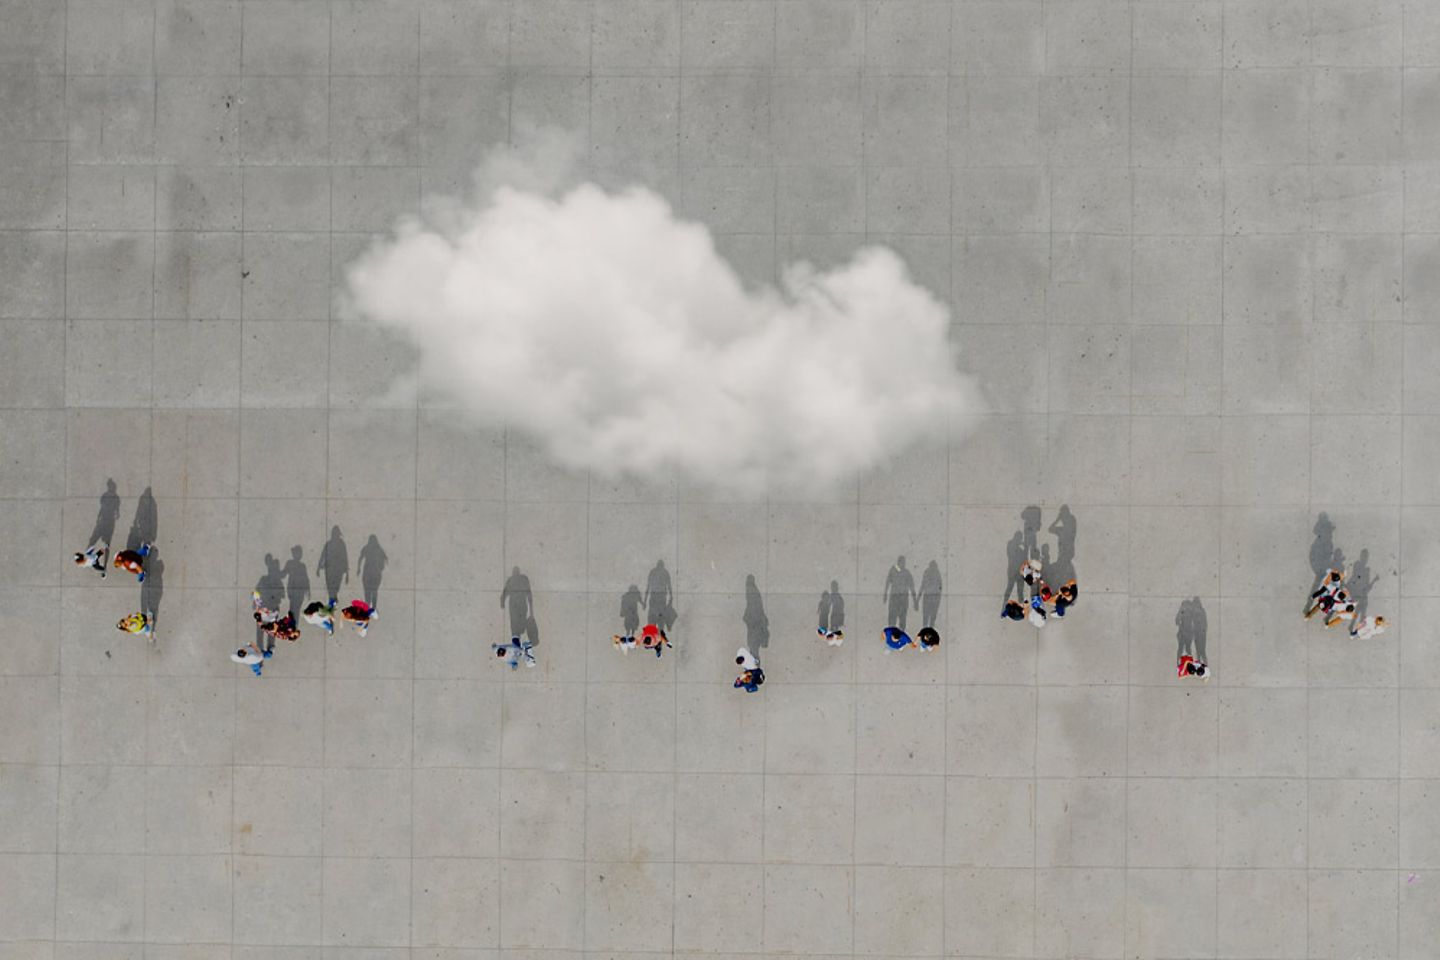  Luftaufnahme einer Menschenmenge mit einer Wolke